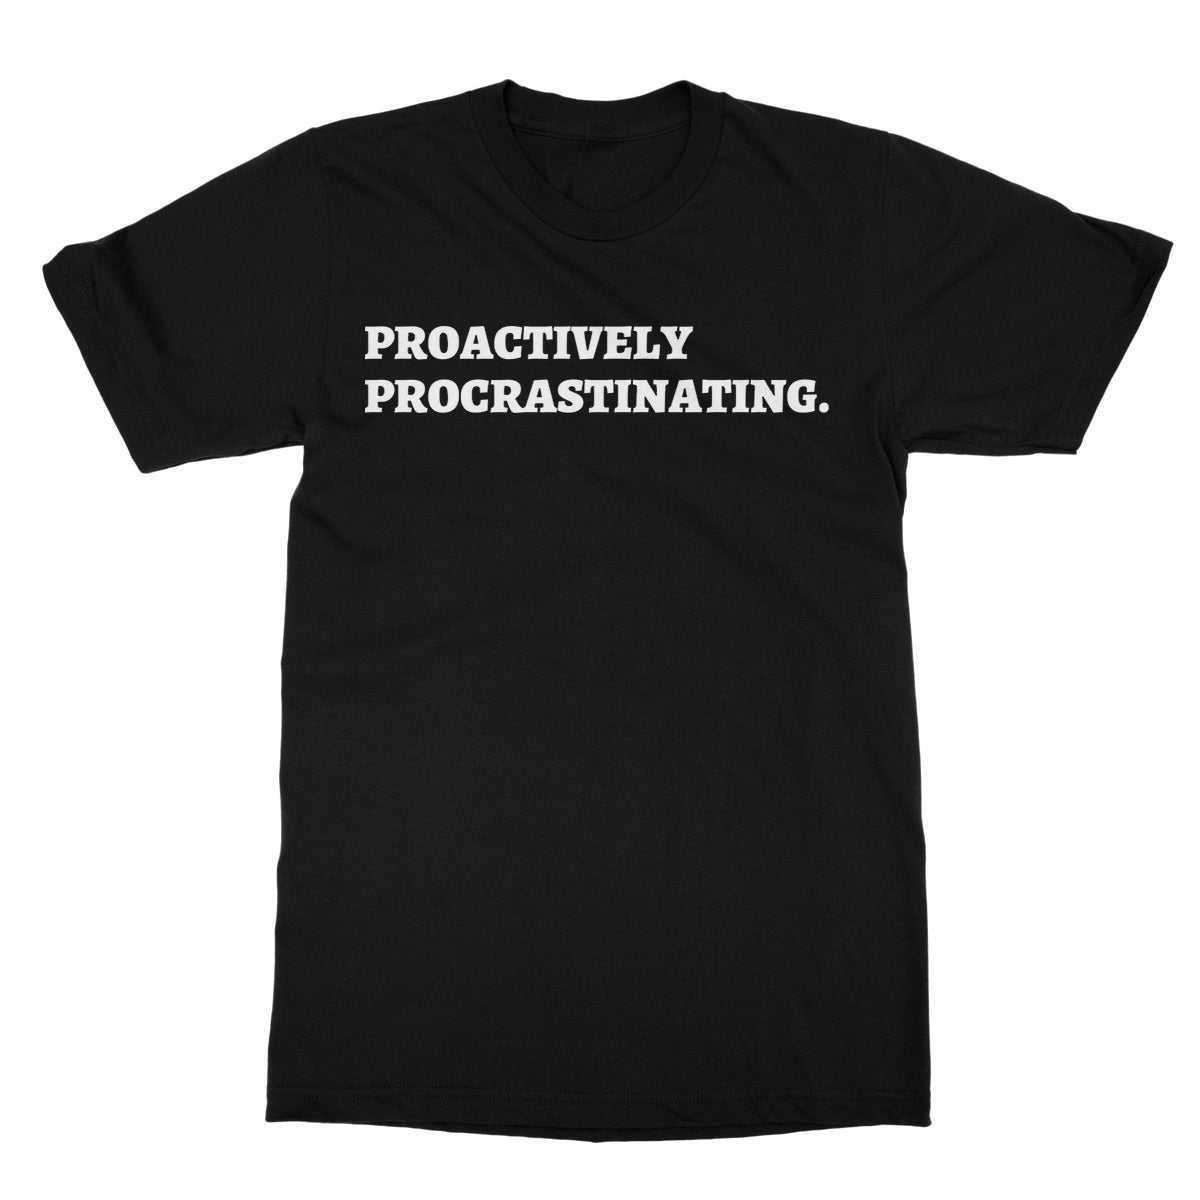 proactively procrastinating t shirt black